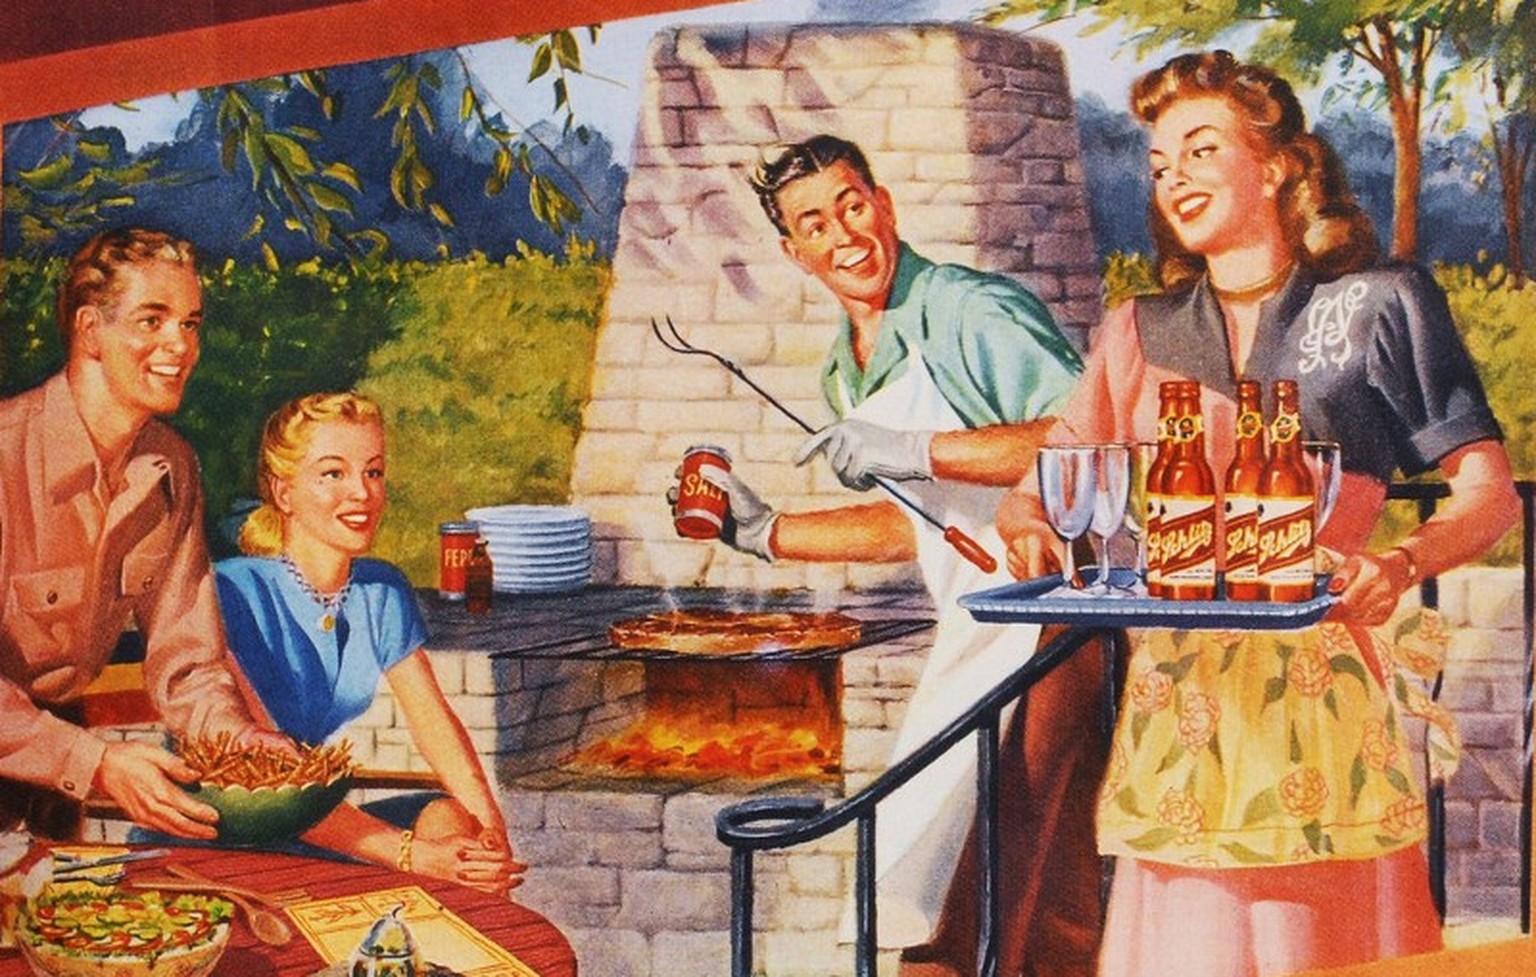 Typischer Steingrill aus den 40ern. Das Grillieren war die Domäne der Männer, während die Frau für Getränke, Salat und Dessert sorgte.